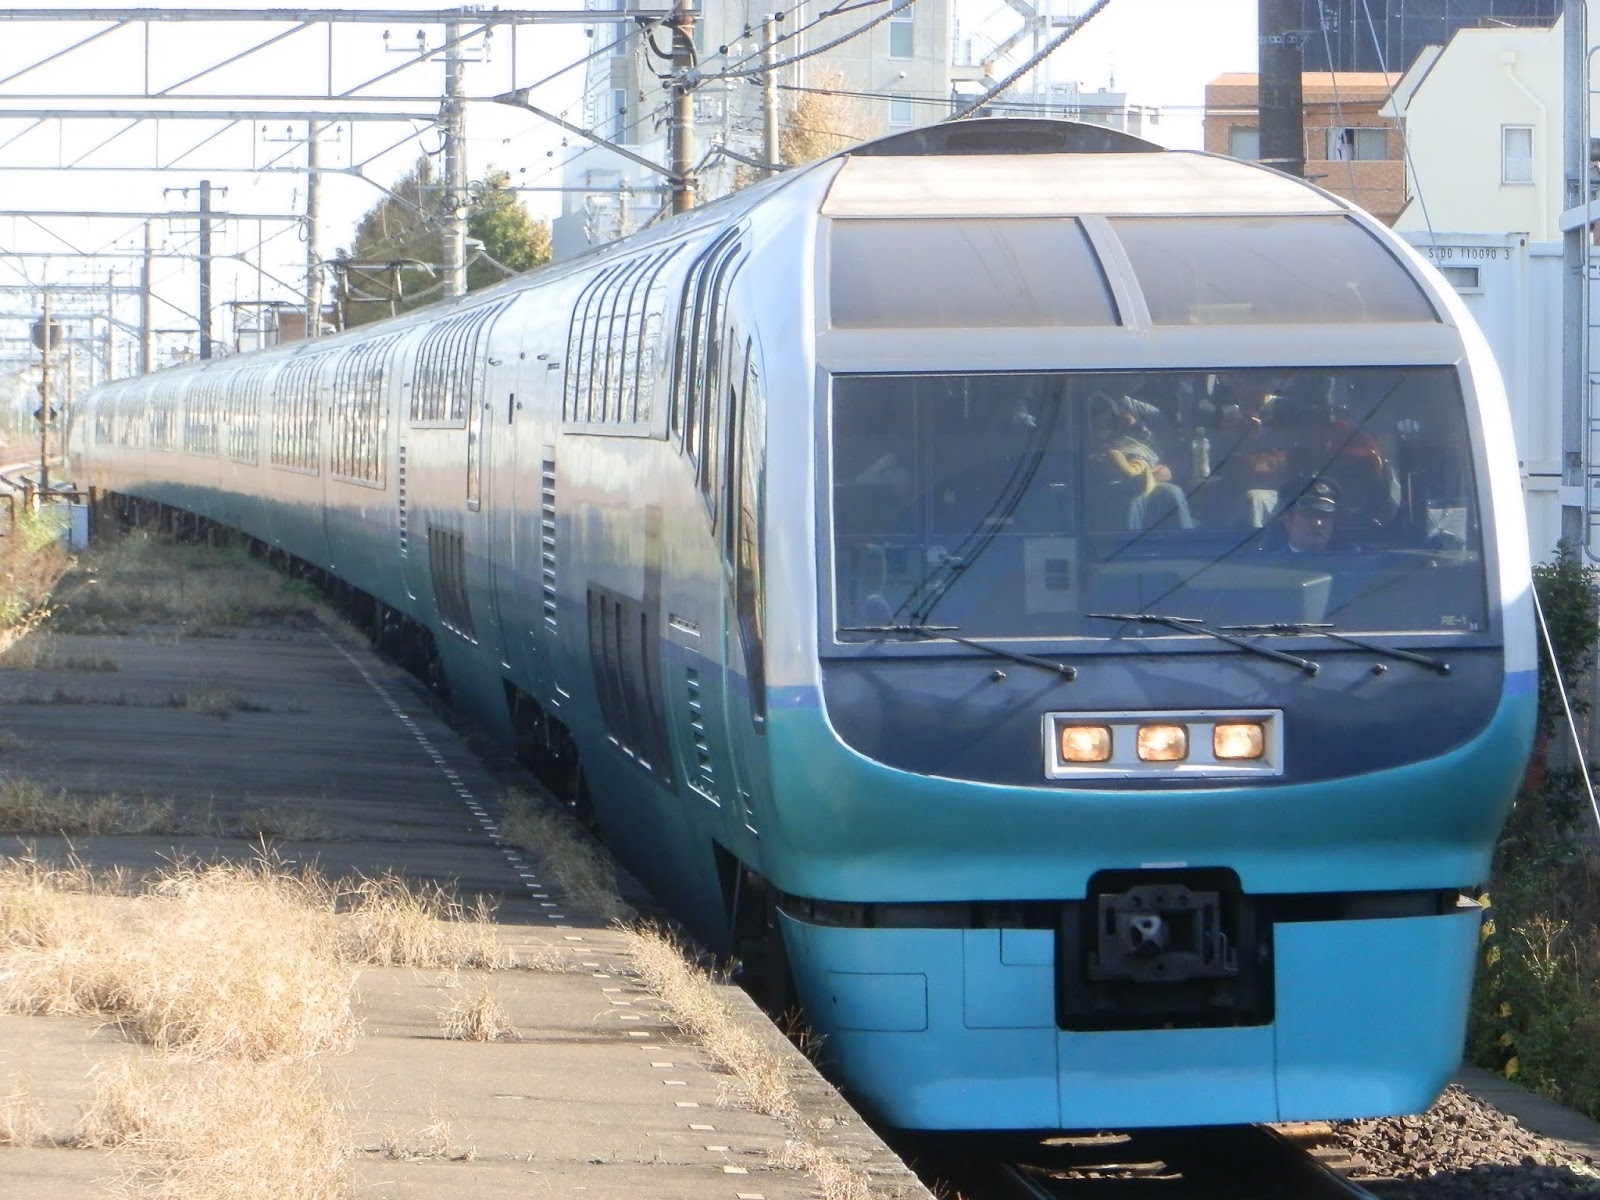 小田急沿線住み鉄道ファン日記 時代の流れ 東日本旅客鉄道の 踊り子 185系と スーパービュー踊り子 251系 ついに車両置き換えへ